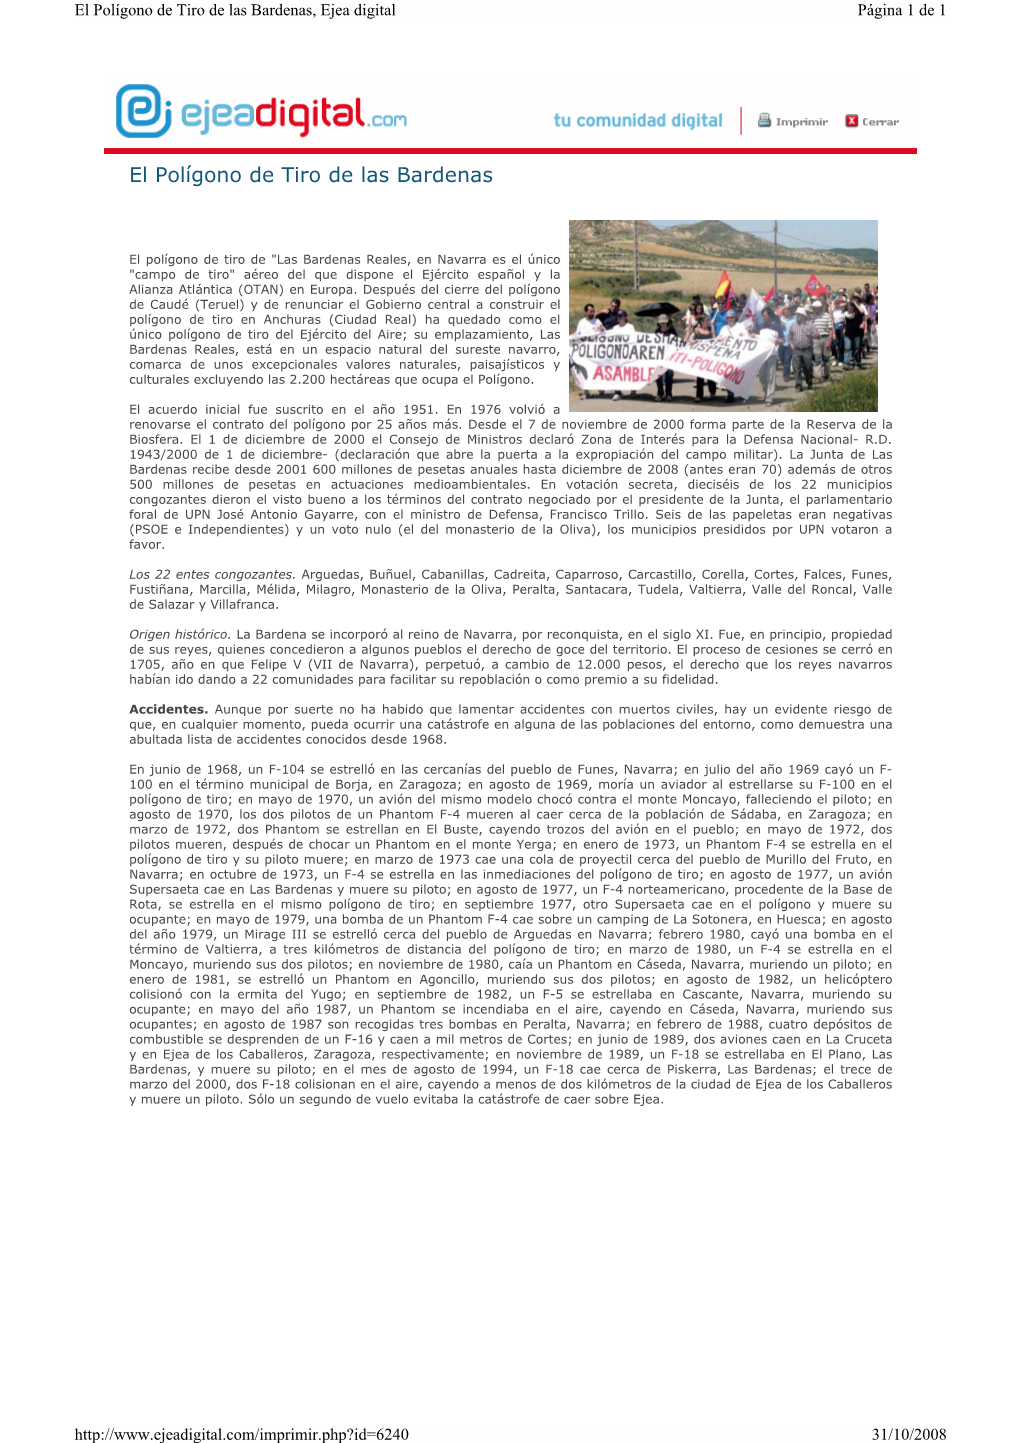 El Polígono De Tiro De Las Bardenas, Ejea Digital Página 1 De 1